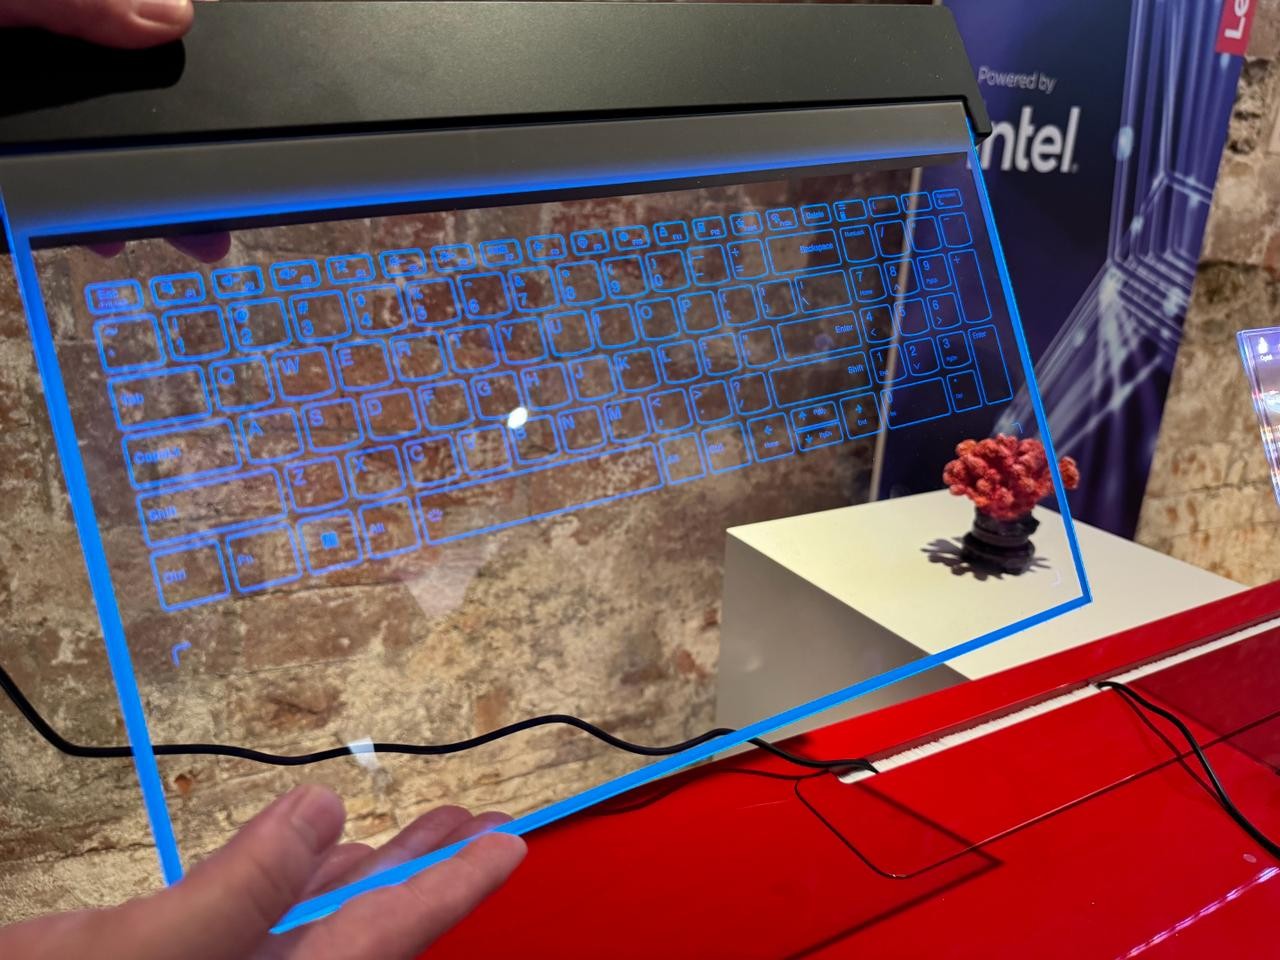 O teclado transparente do novo notebook da Lenovo que será lançado na Mobile World Congress- Foto: Divulgação